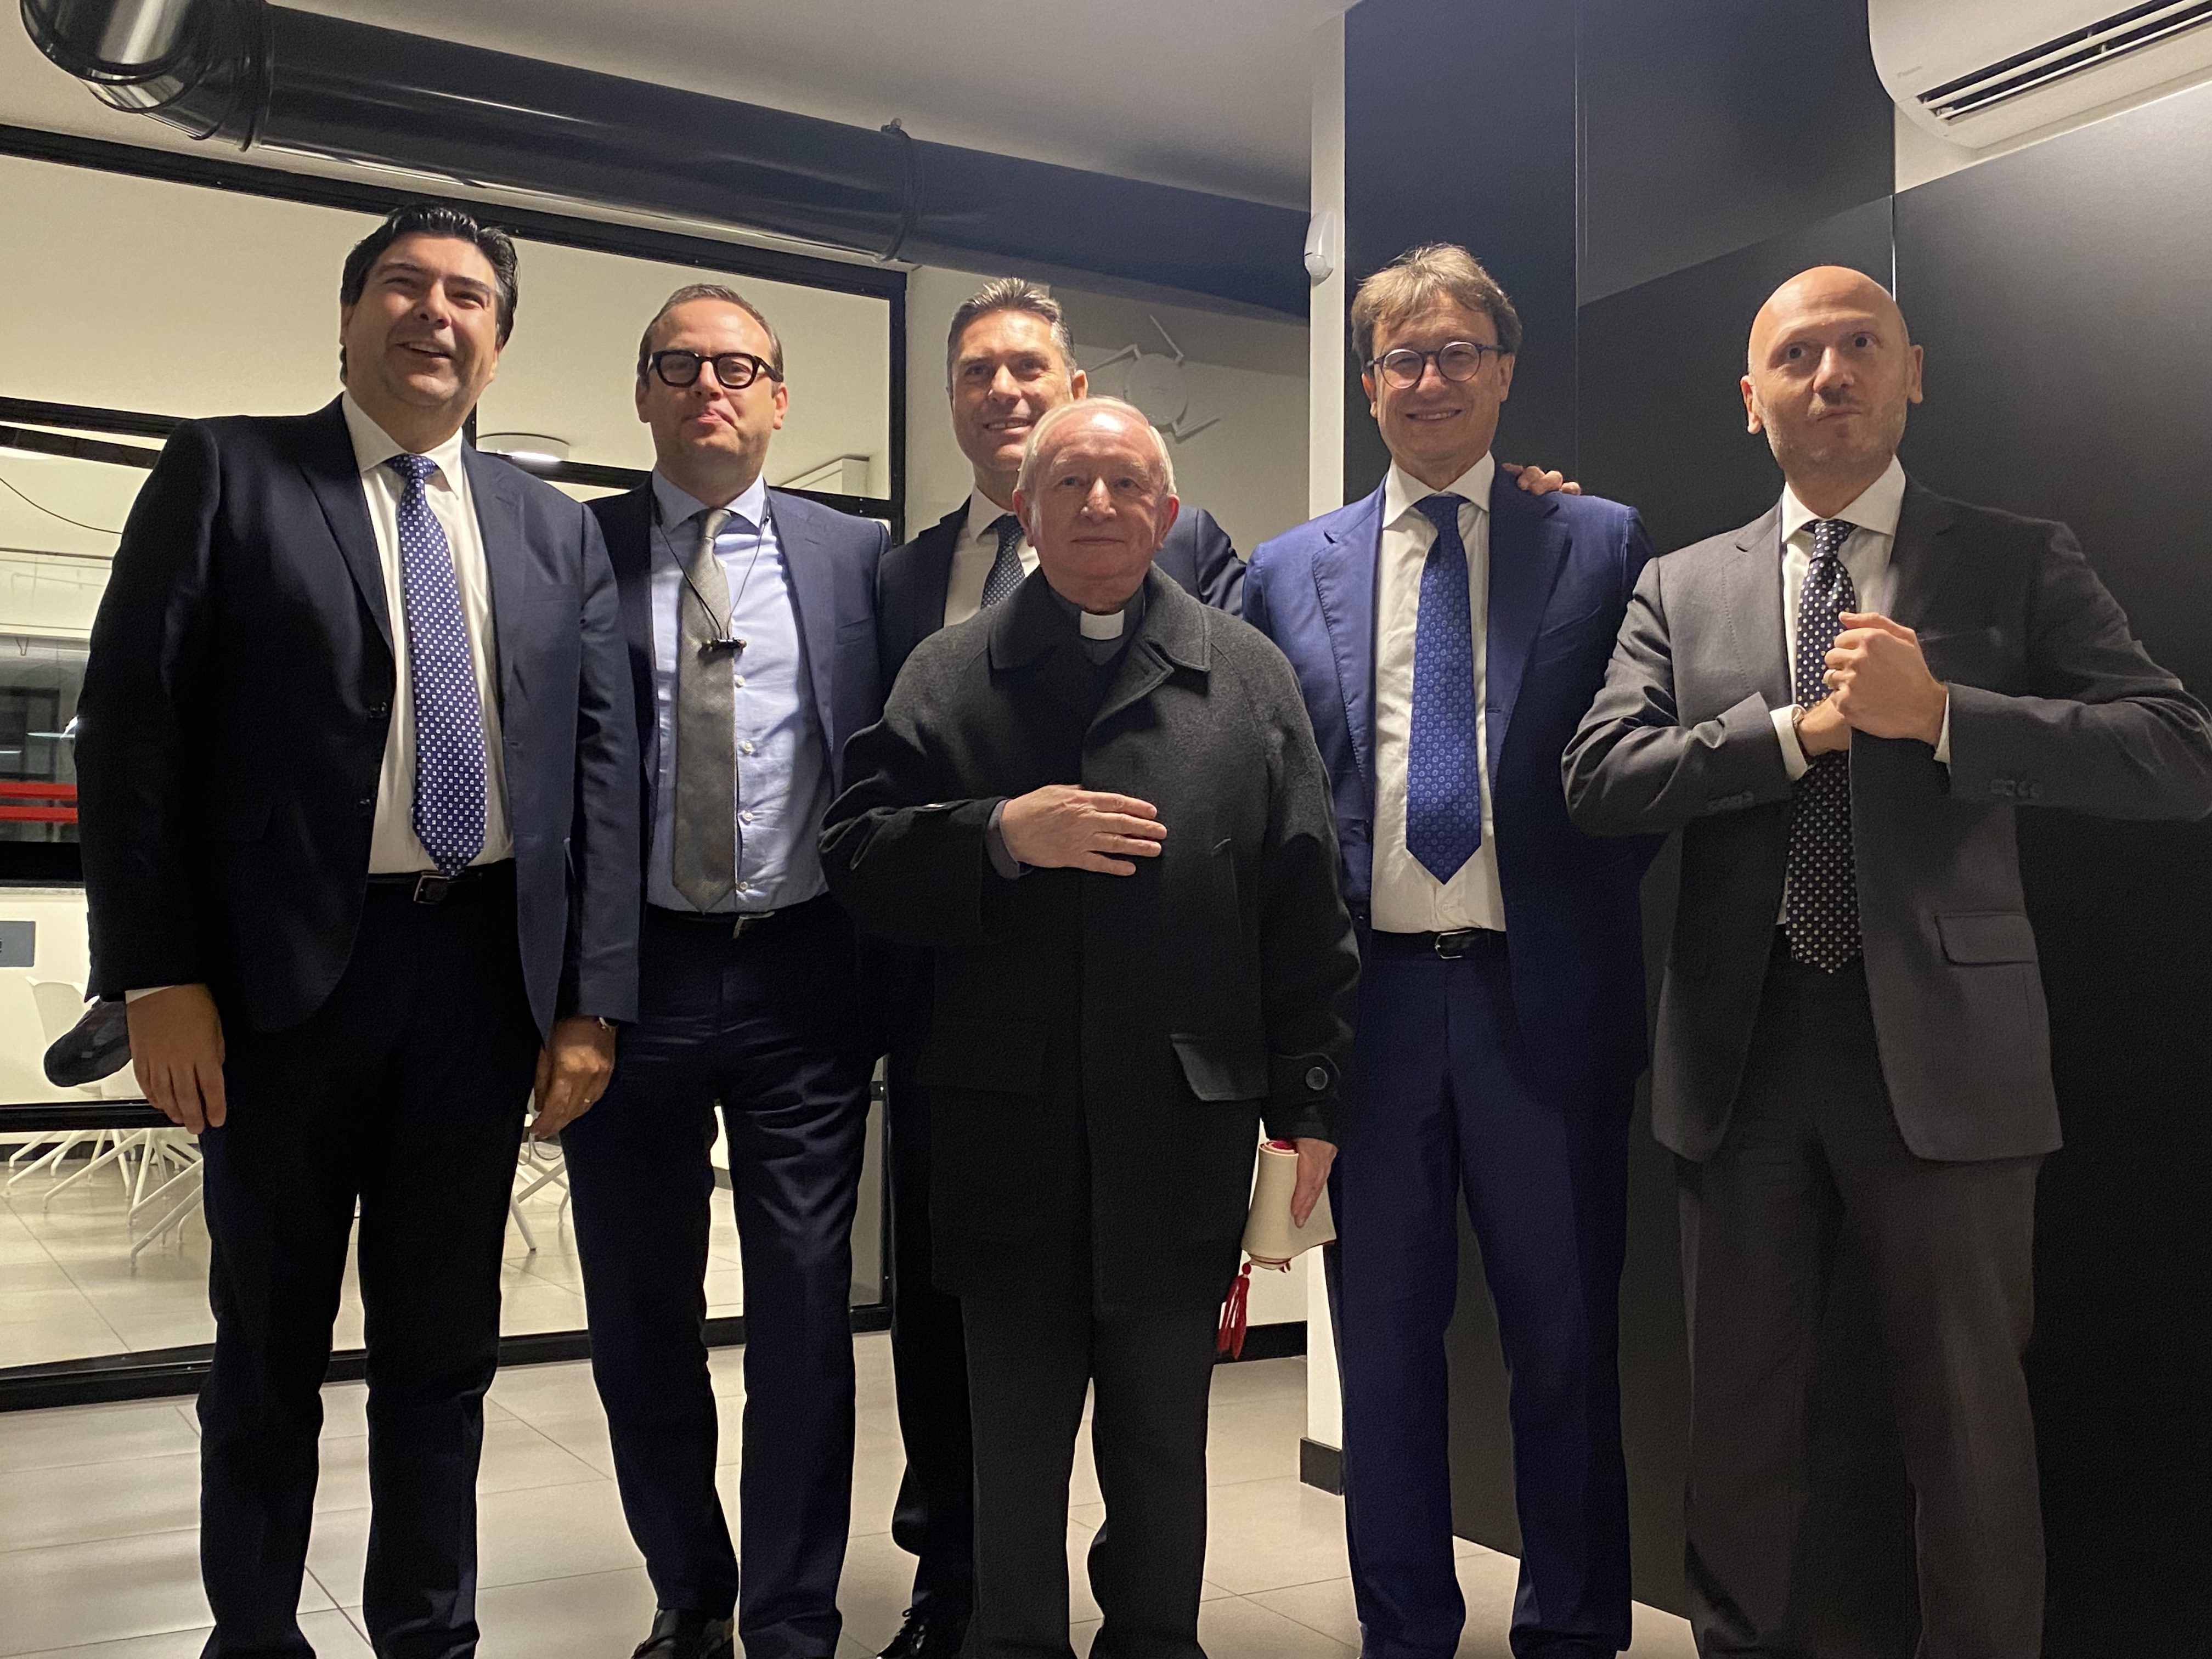 Enrico Cantù, nuovi uffici per “dare risposte sempre più eccellenti ai bisogni della comunità di Saronno”